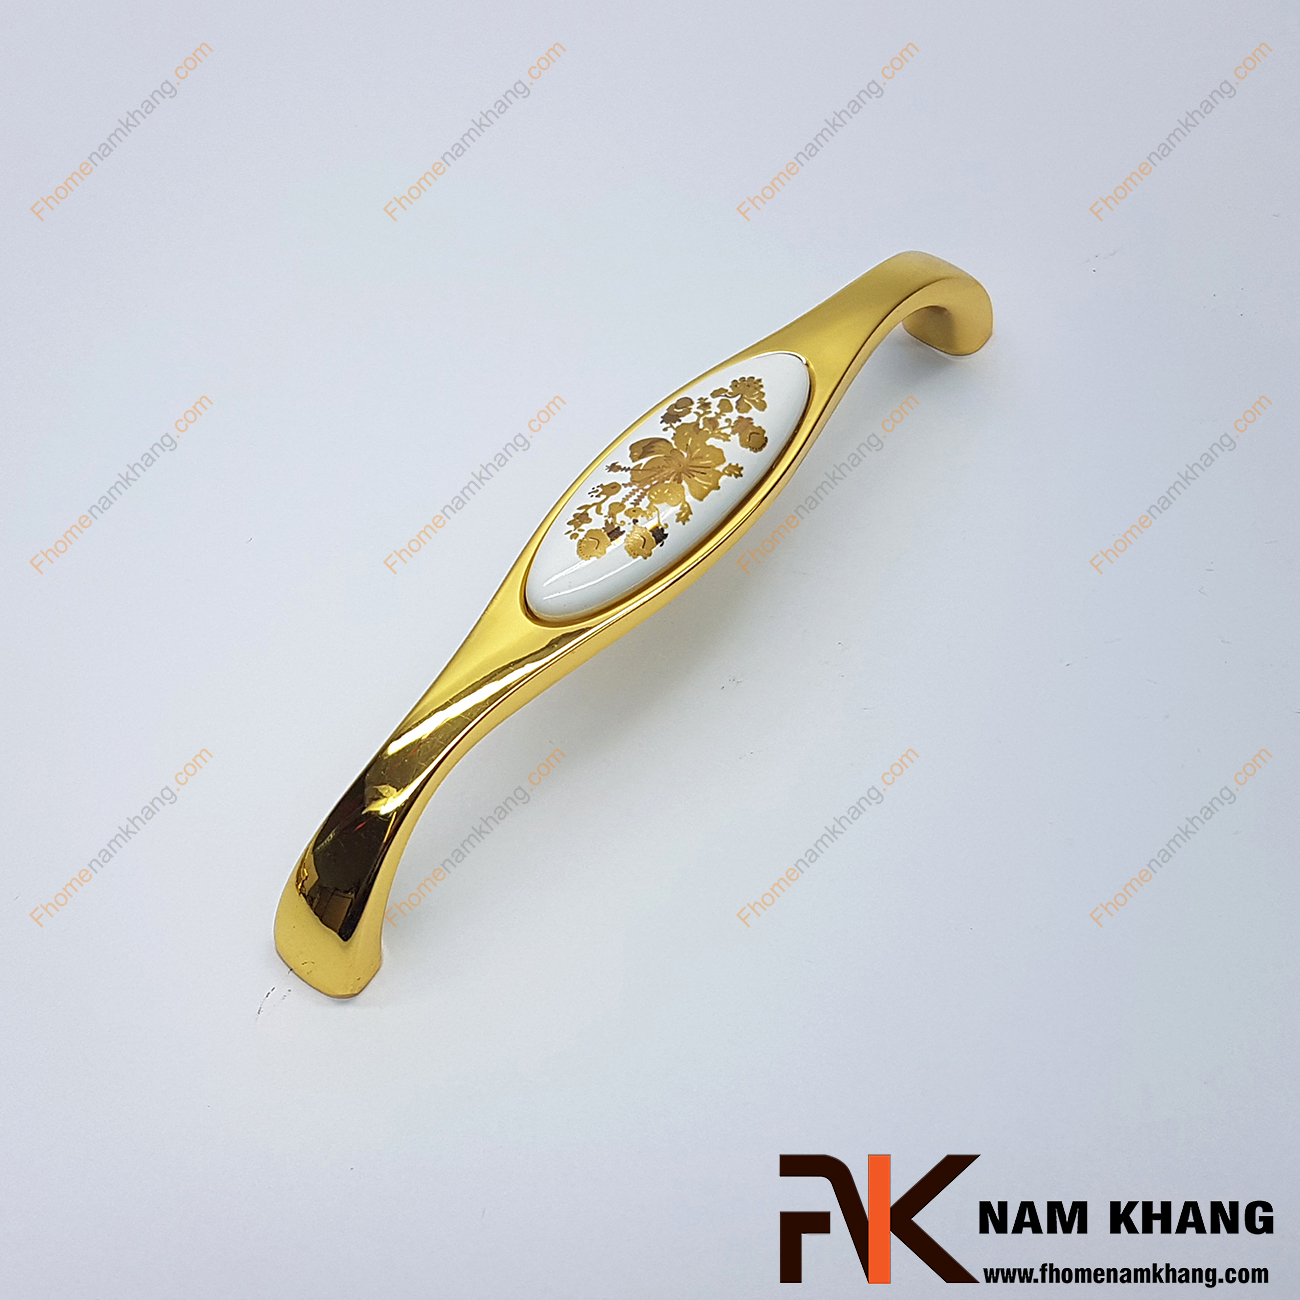 Tay nắm cửa tủ phối sứ đế vàng bóng NK359-128HV2 với thiết kế bền đẹp và tạo điểm nhấn hoa vàng trên mặt sứ cao cấp, đây là sản phẩm đang được đánh giá cao trong ngành nội thất thẫm mỹ bởi chất lượng và vẻ đẹp thu hút ánh nhìn của nó